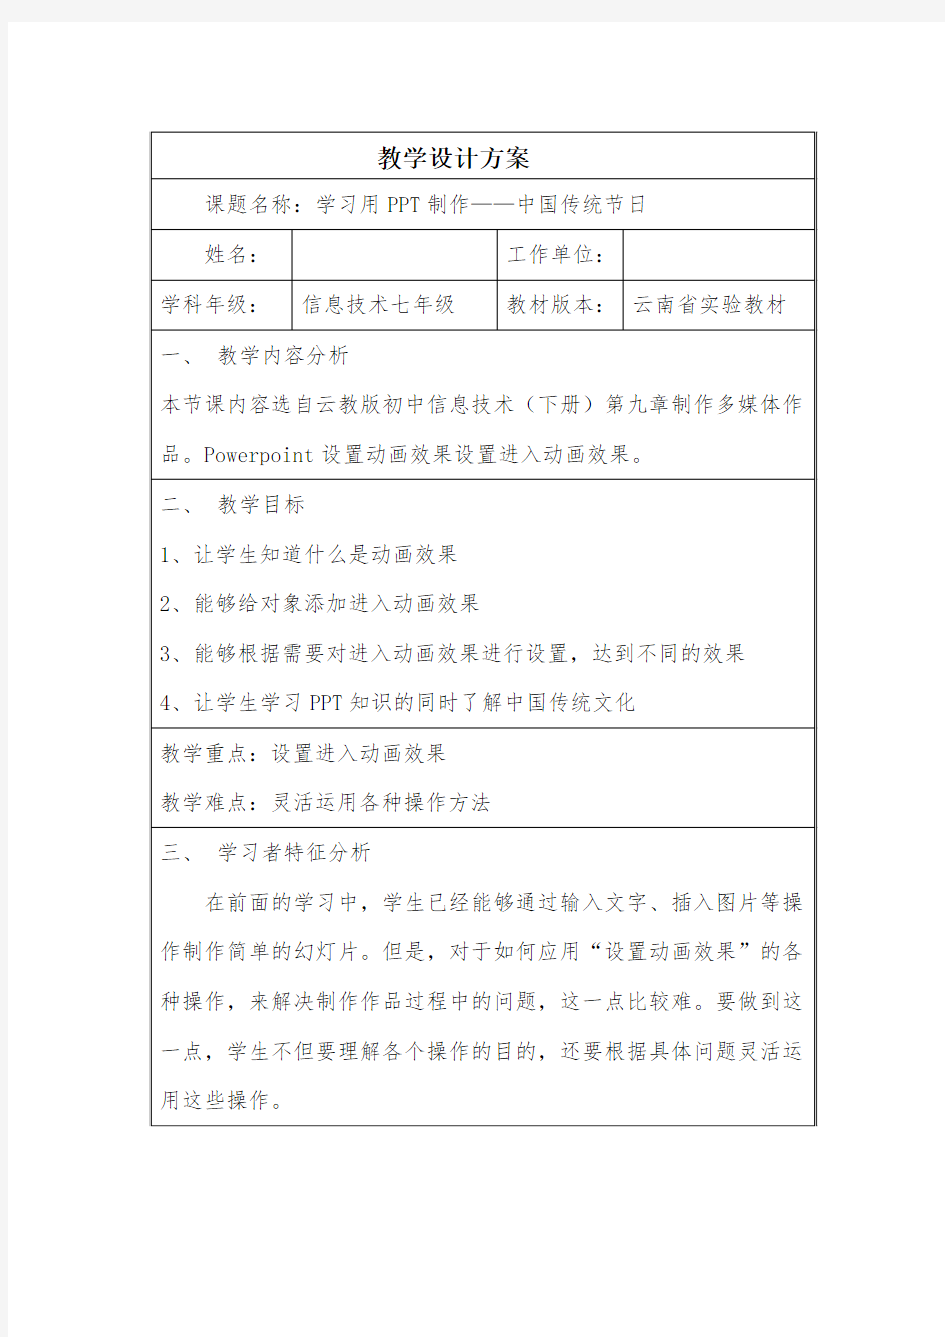 作业5学习用PPT制作——中国传统节日 (2)